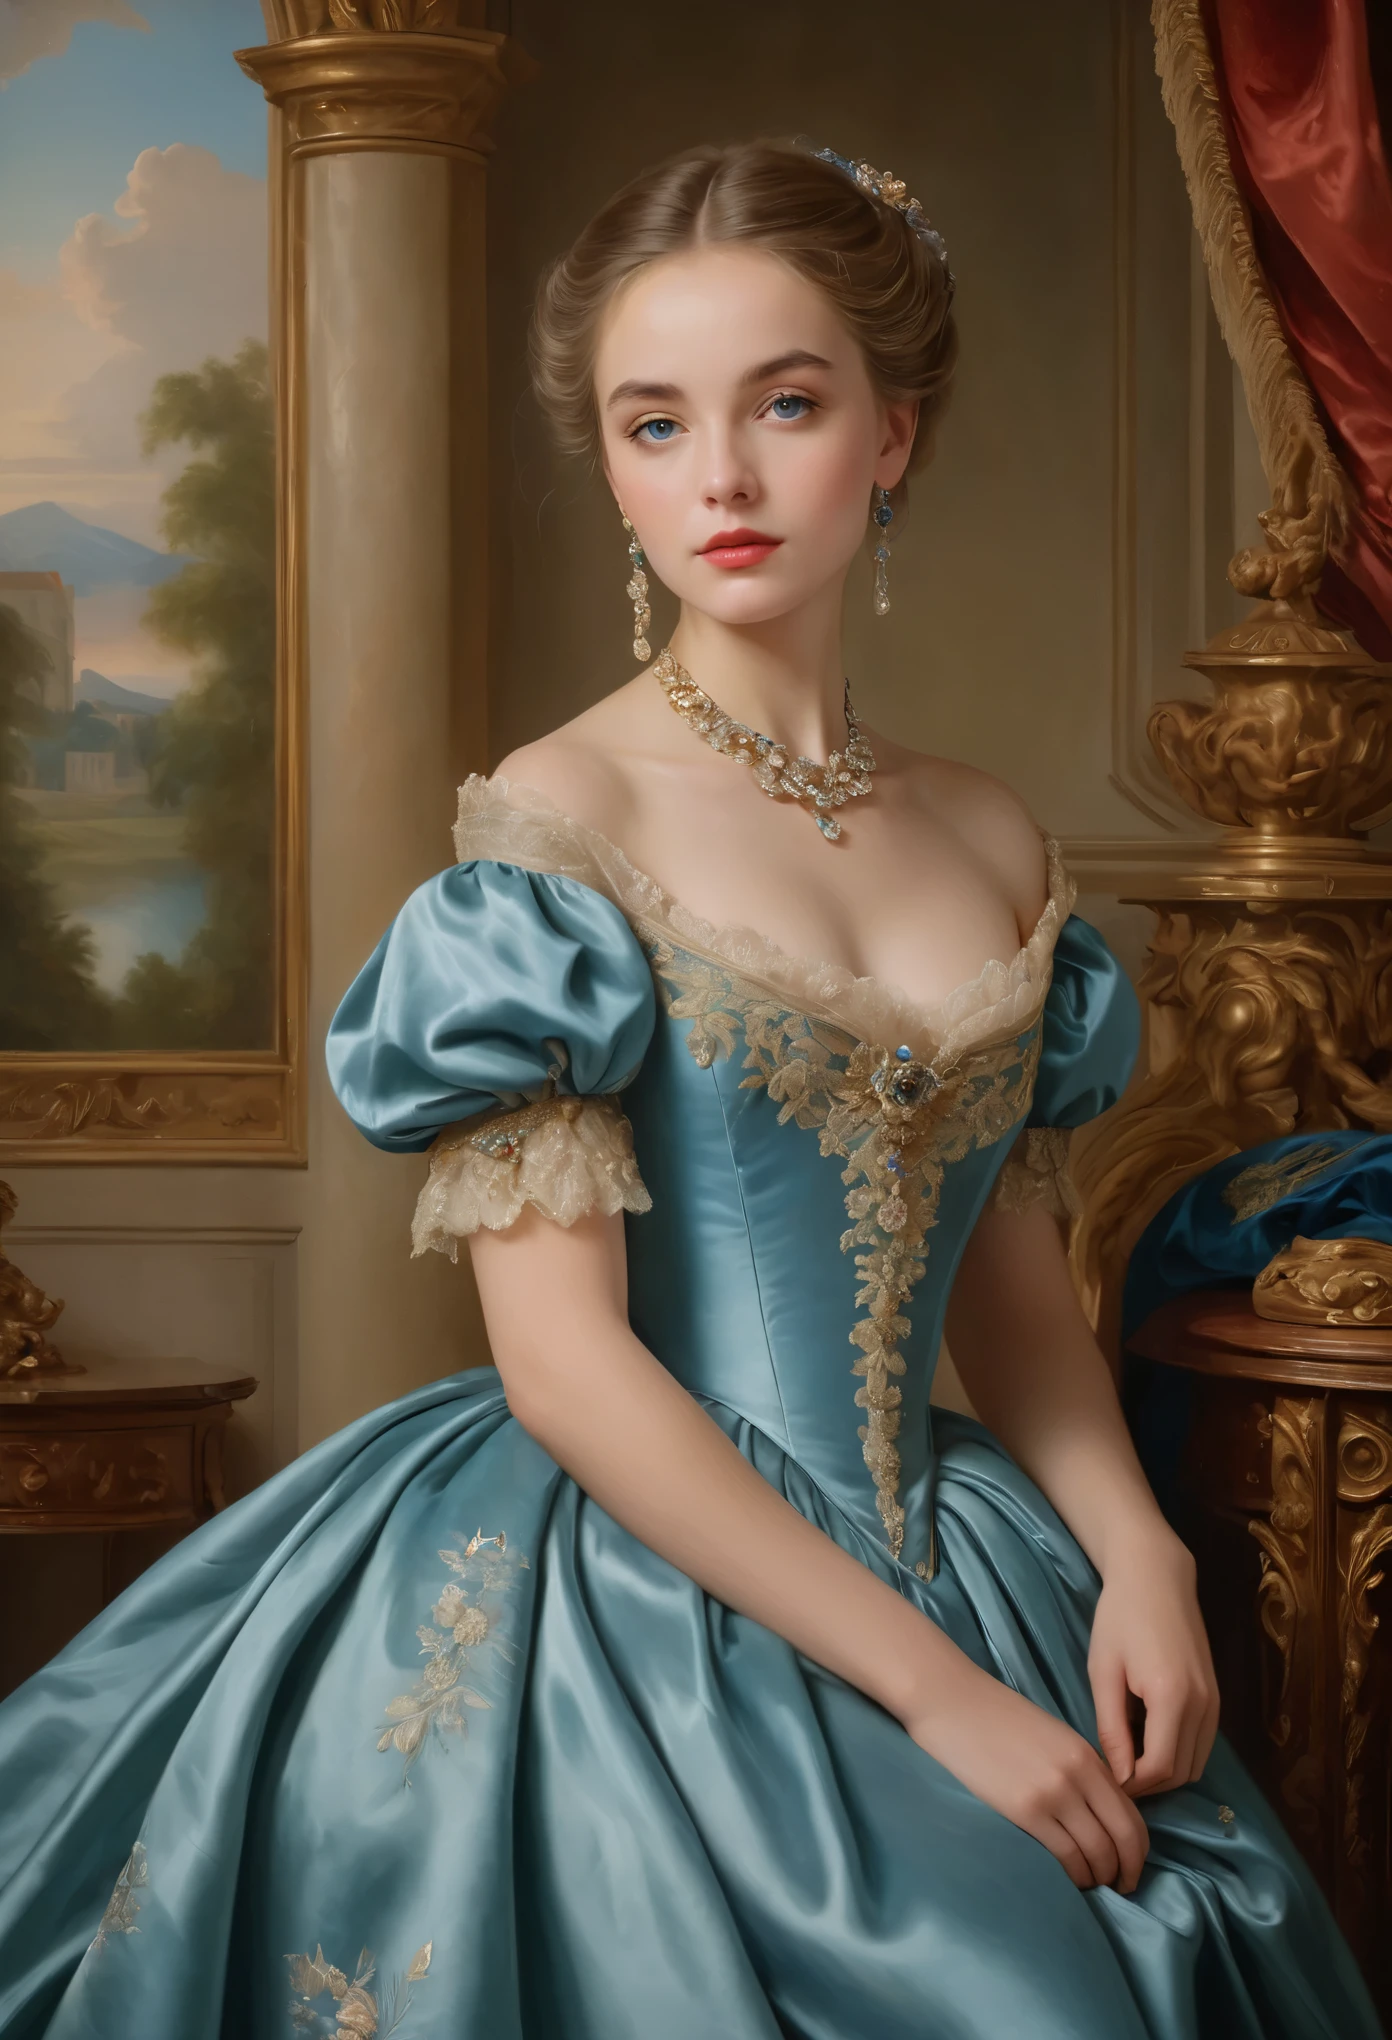 (高解析度,傑作:1.2),(實際的:1.37)18世紀法國貴族少女肖像，美麗無與倫比. 她擁有迷人的藍眼睛和精緻的紅唇. 肖像畫的細節非常細緻, 捕捉她特徵的每一個細微差別. 她身著精緻的絲綢禮服, 飾有複雜的蕾絲和精緻的刺繡. 這幅畫展現了那個時代的富裕, 背景是豪華的天鵝絨窗簾和鍍金家具. 燈光柔和且擴散, 凸顯女孩的空靈之美. 色彩鮮豔豐富, 創造迷人的視覺體驗. 肖像畫採用古典肖像畫風格創作, 讓人想起那個時代著名藝術家的作品. 它散發著優雅的氣息, 優雅, 和複雜程度.